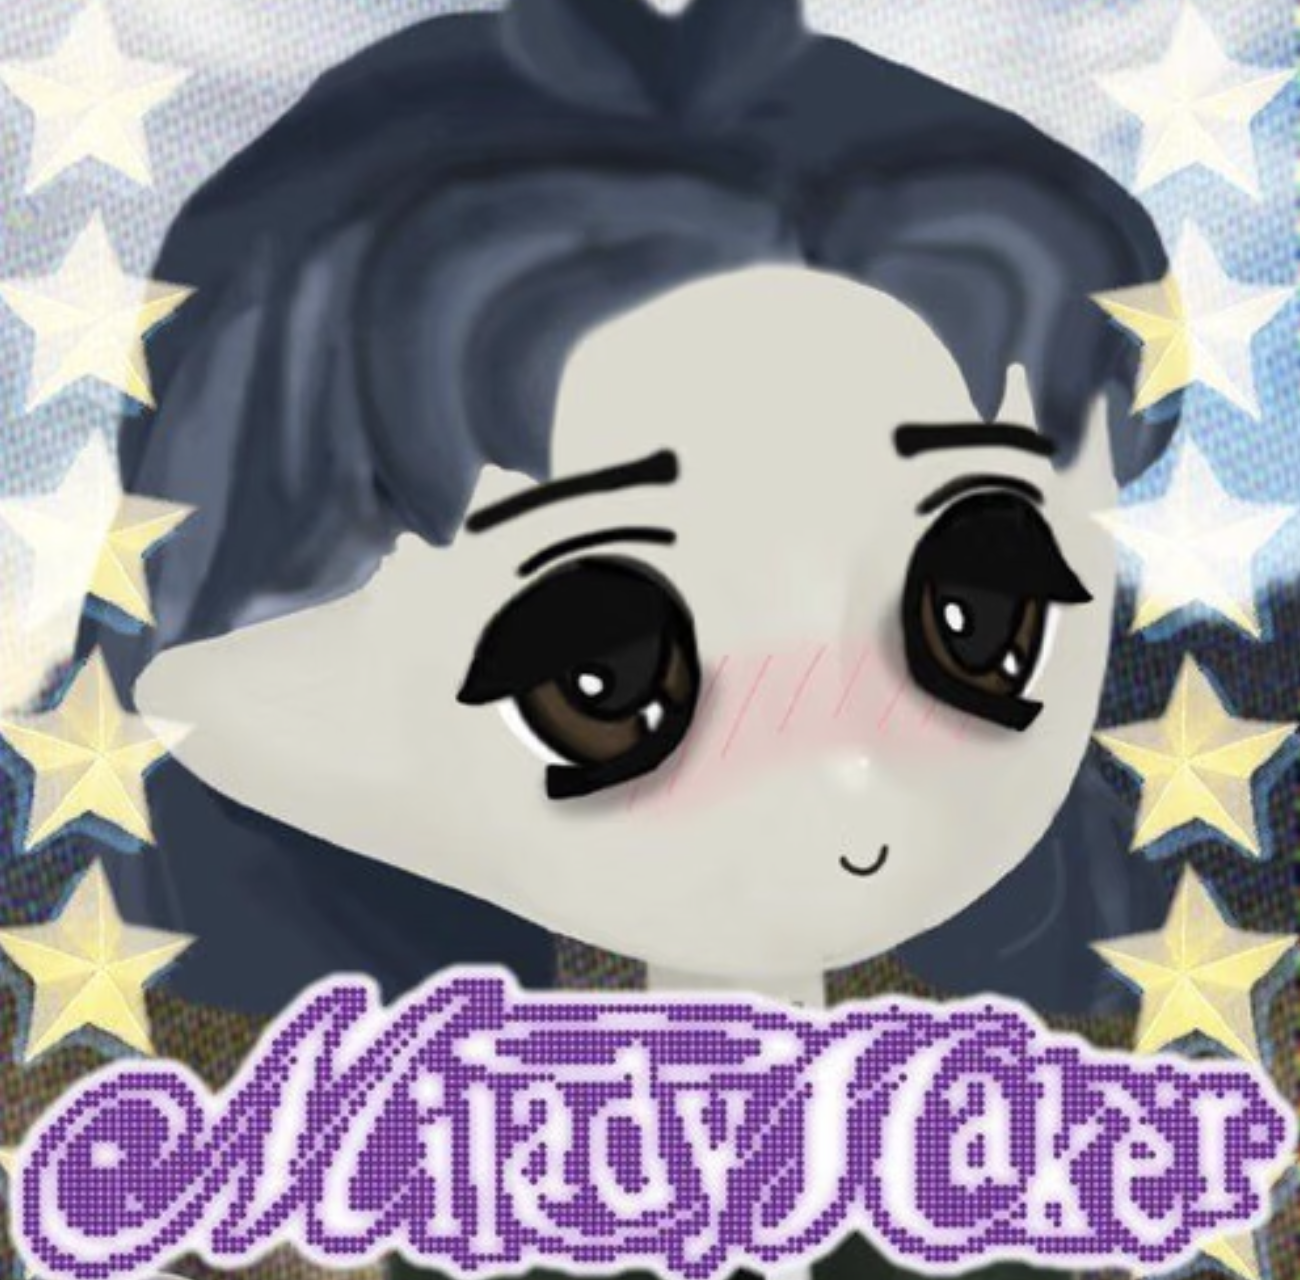 Milady Maker